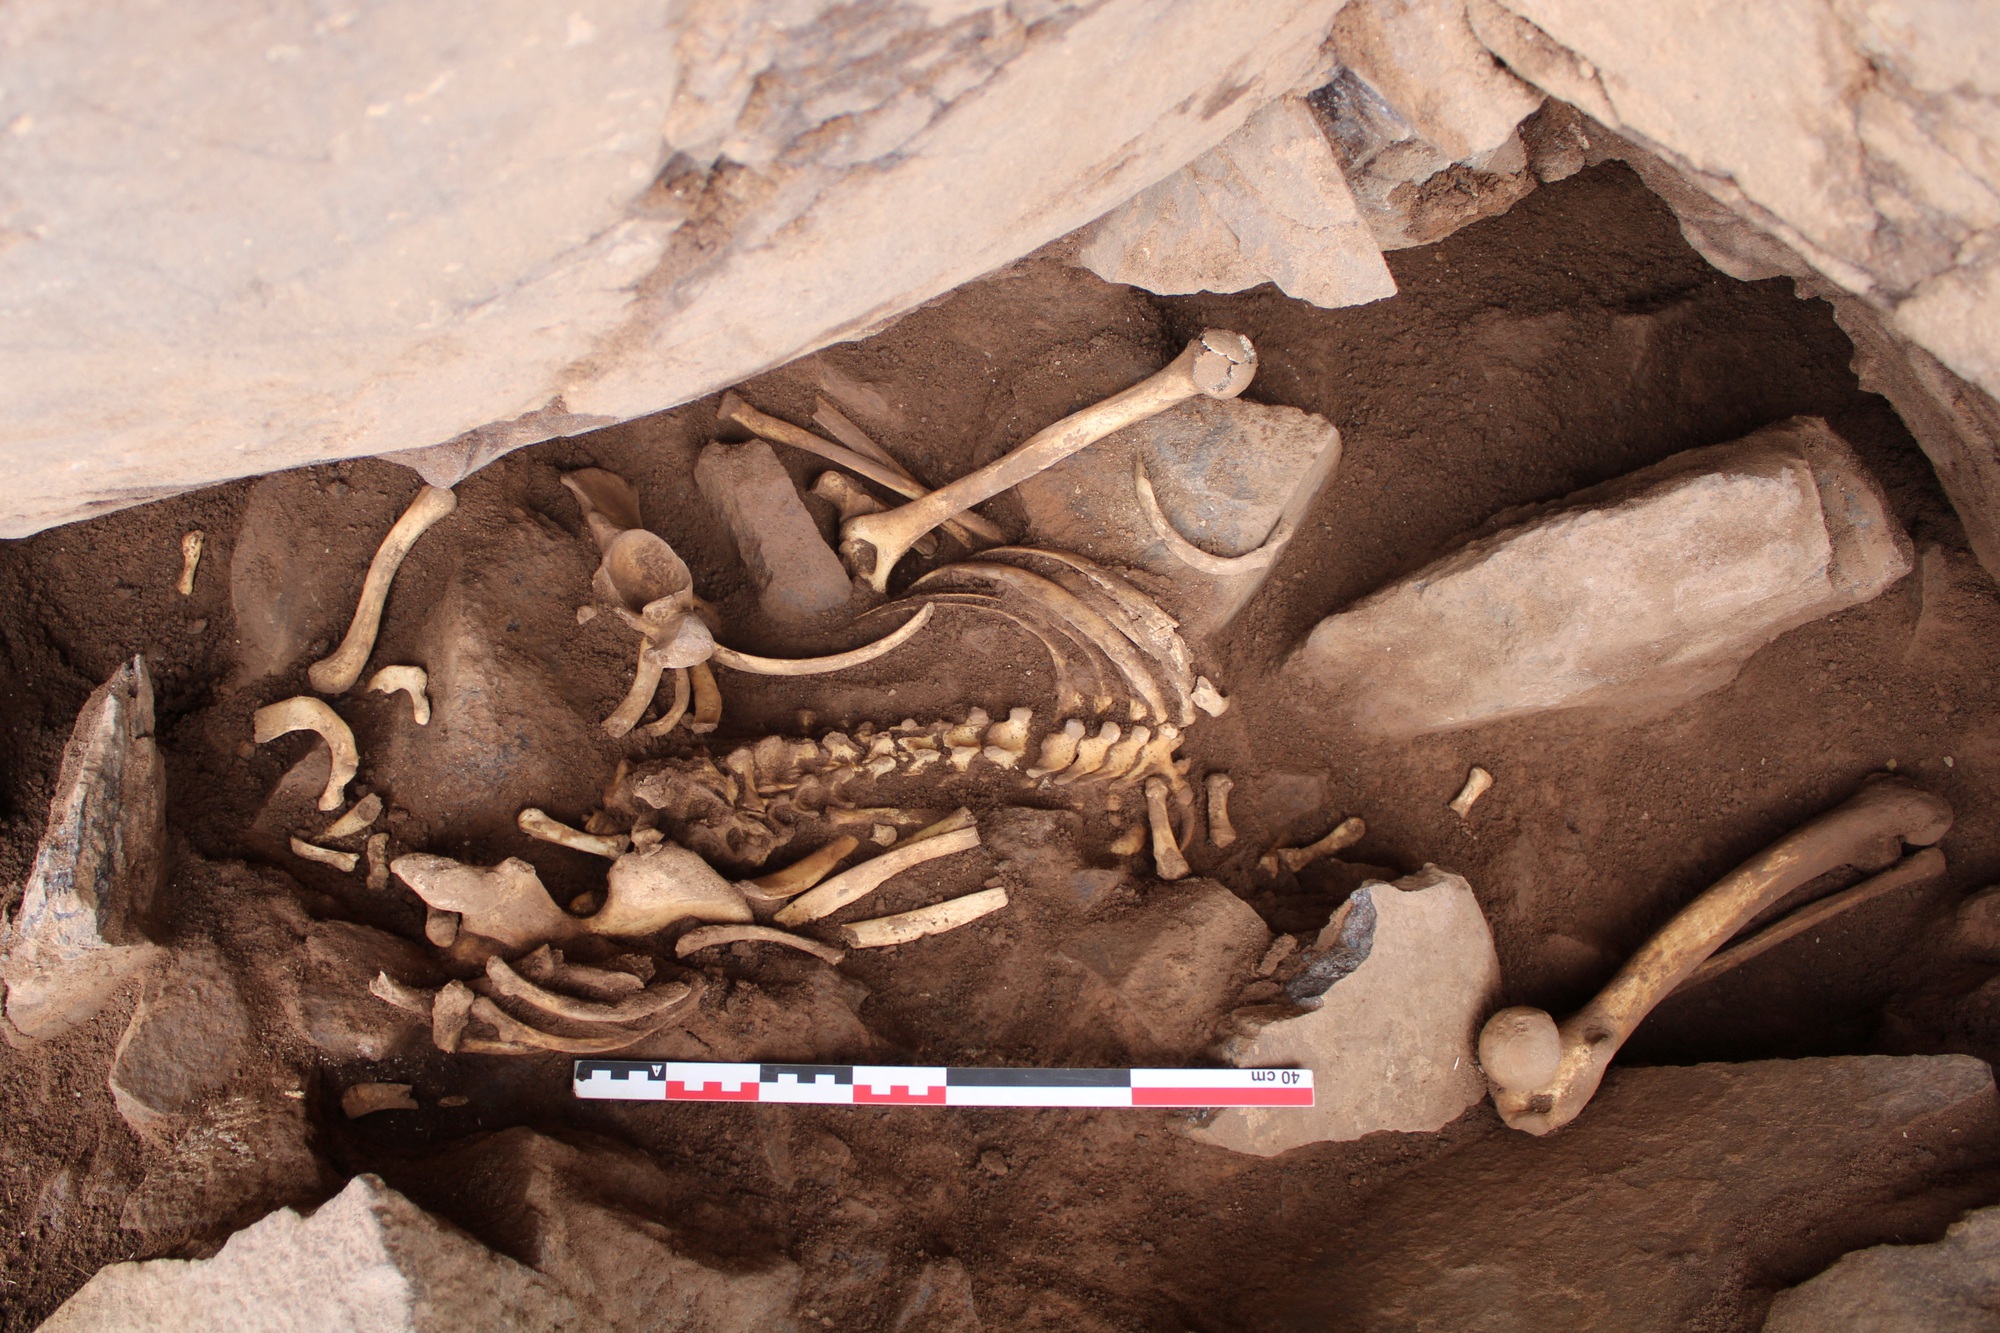 Tây Ban Nha tìm hiểu bí ẩn đằng sau 6 bộ xương ở hang động  - Ảnh 1.